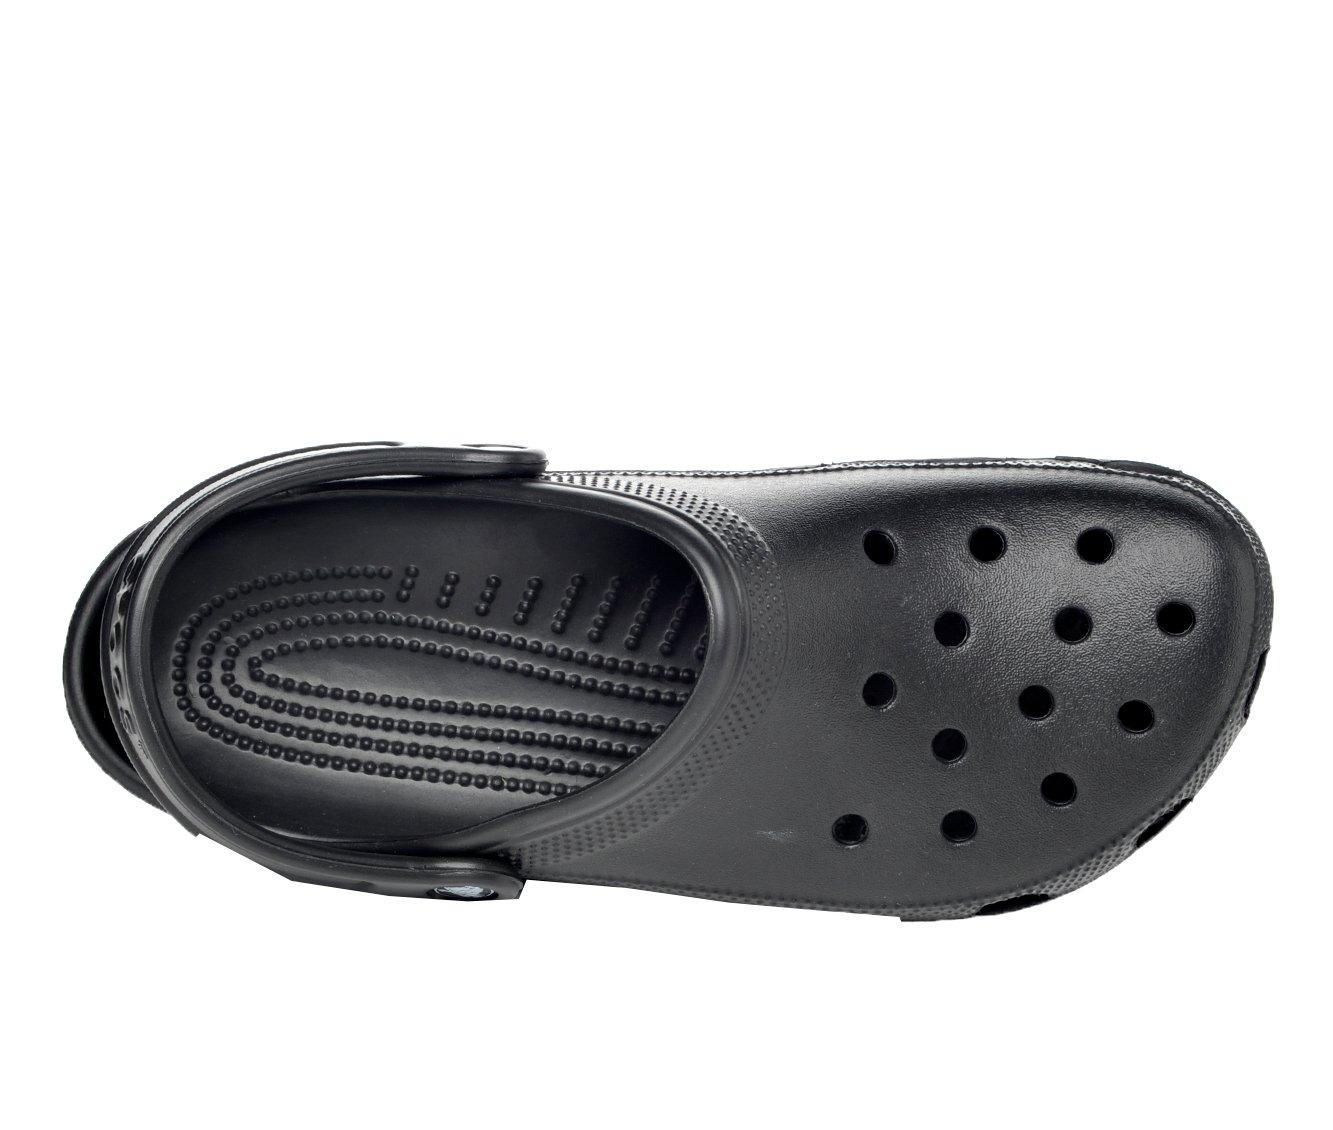 Adults' Crocs Classic Clogs | Shoe Carnival